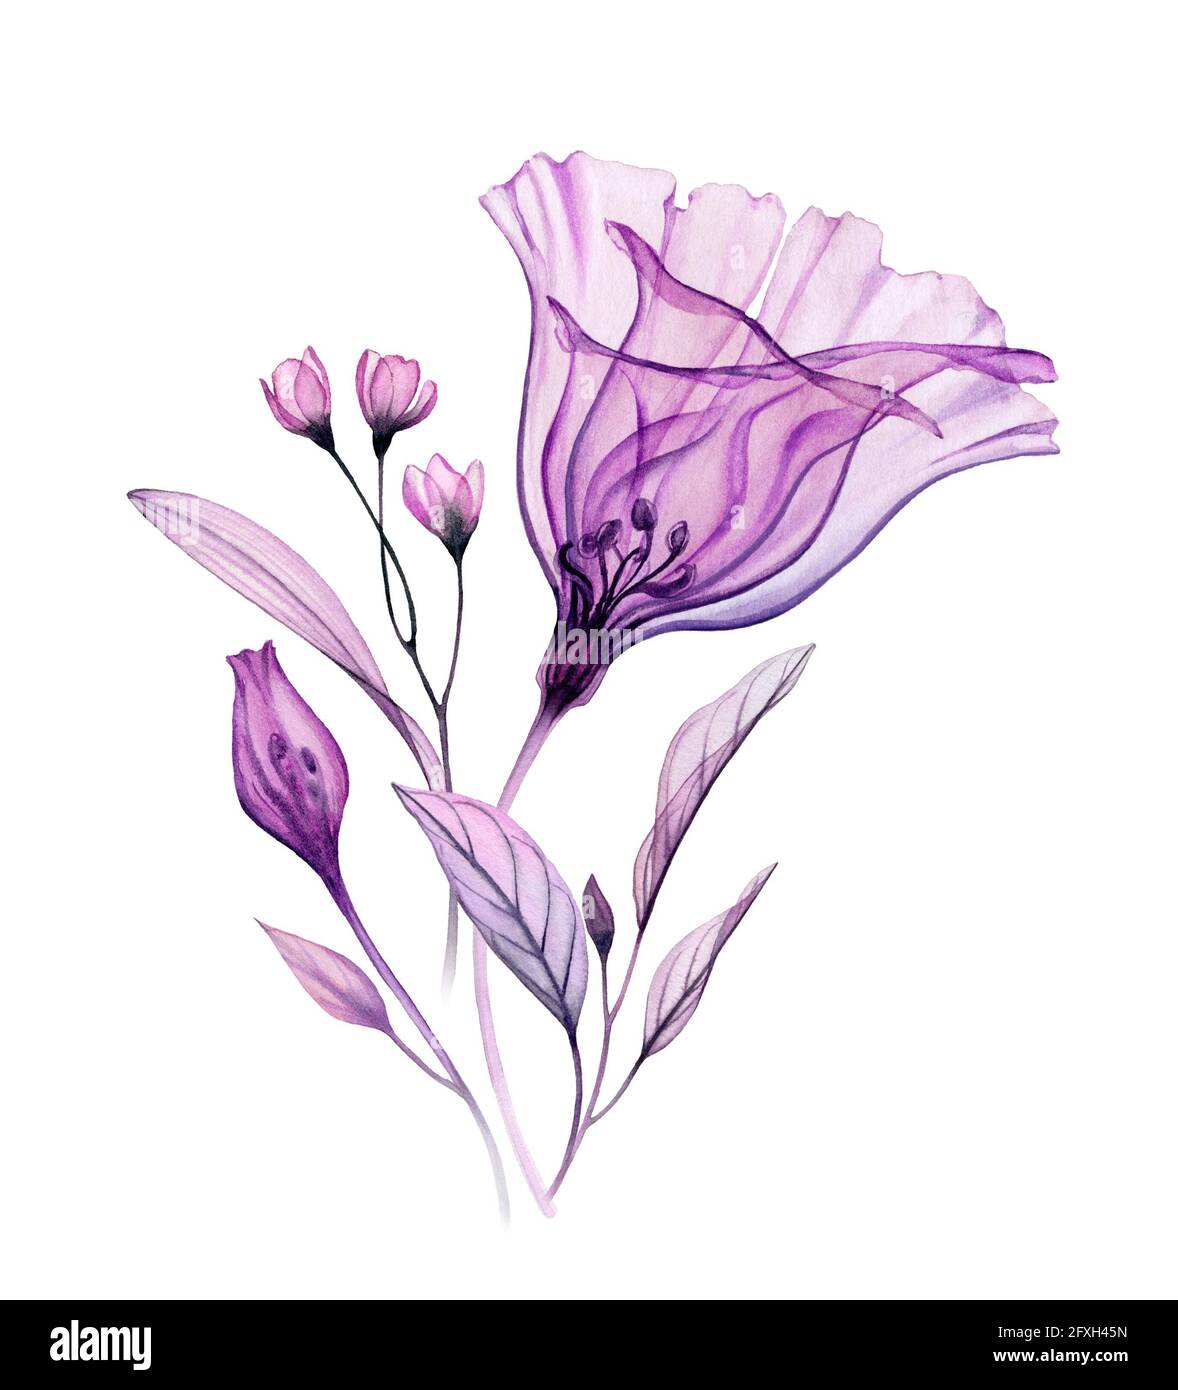 Aquarell-Blumenarrangement. Handbemaltes Kunstwerk mit durchsichtiger violetter Blume und violetten Blättern, isoliert auf Weiß. Botanische Abbildung für Stockfoto